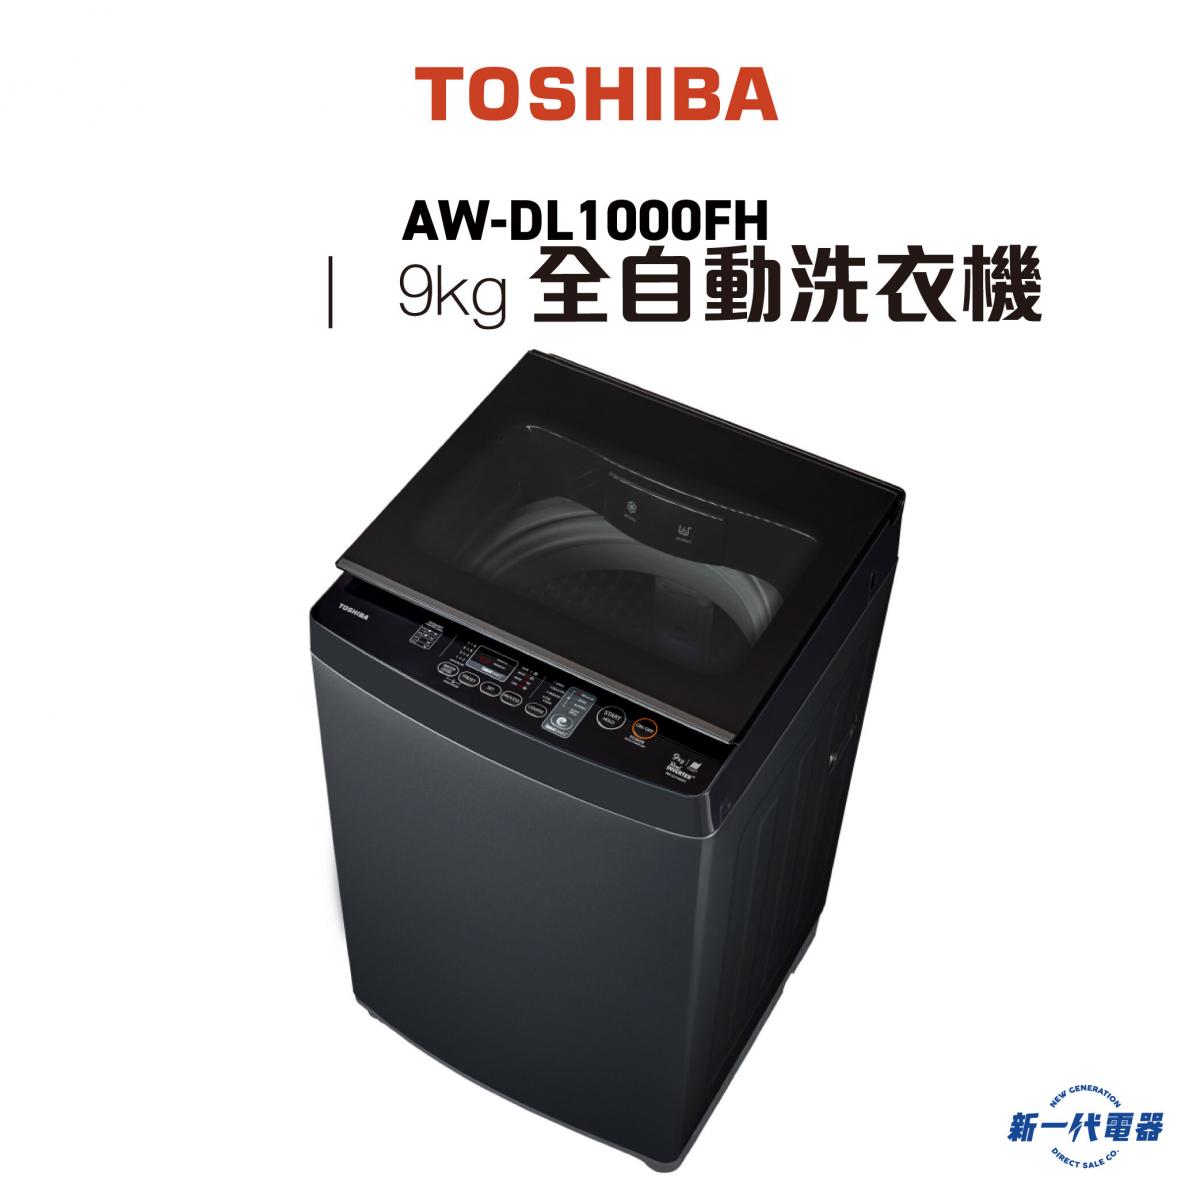 AWDL1000FH  -9KG 低水位 全自動洗衣機 (AW-DL1000FH)